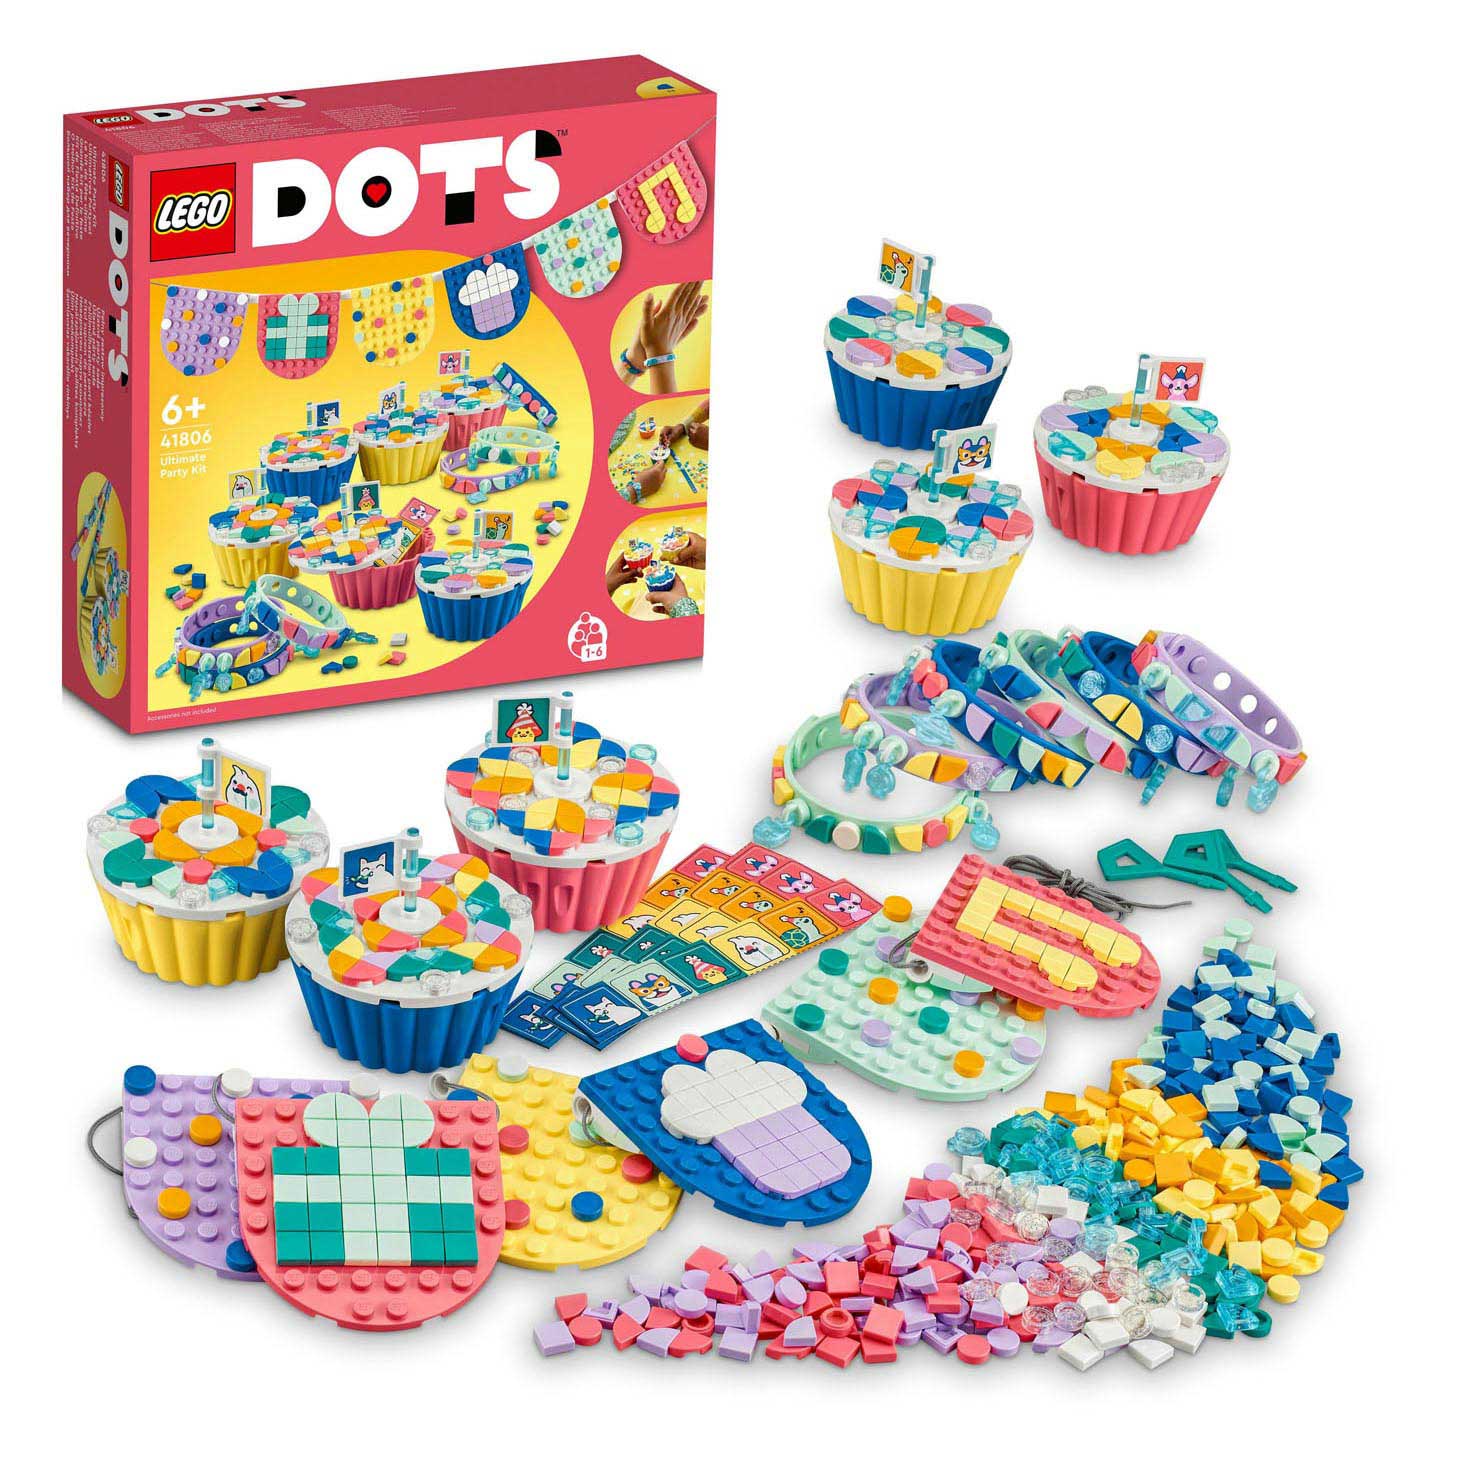 LEGO DOTS Stitch-on Patch 41955 DIY Craft Decoration Kit